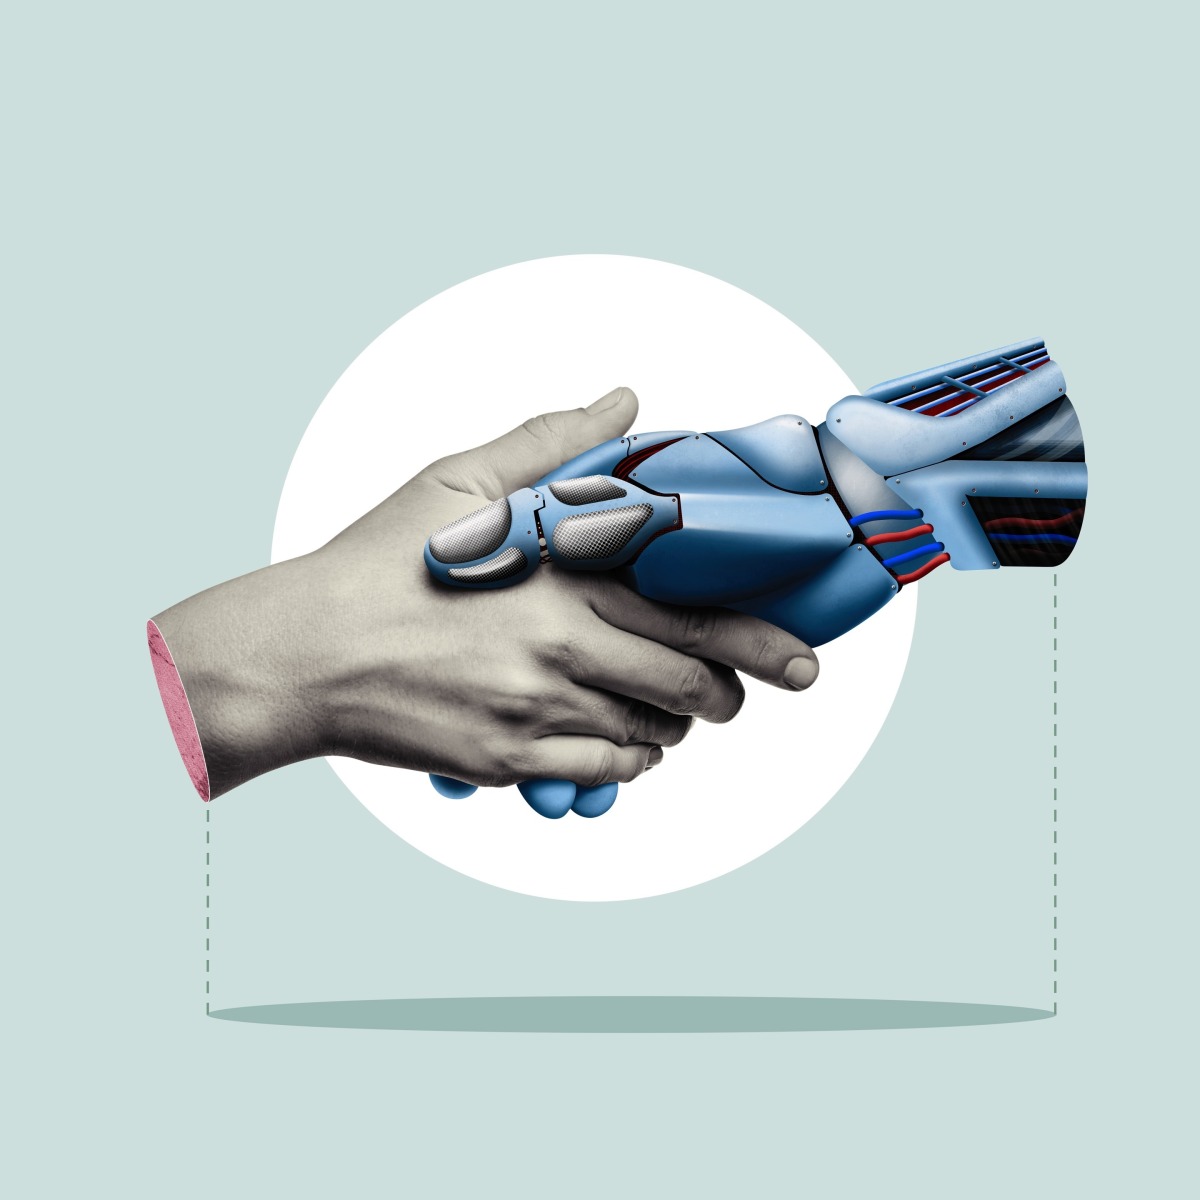 Menschliche Hand hält Hand eines Roboters